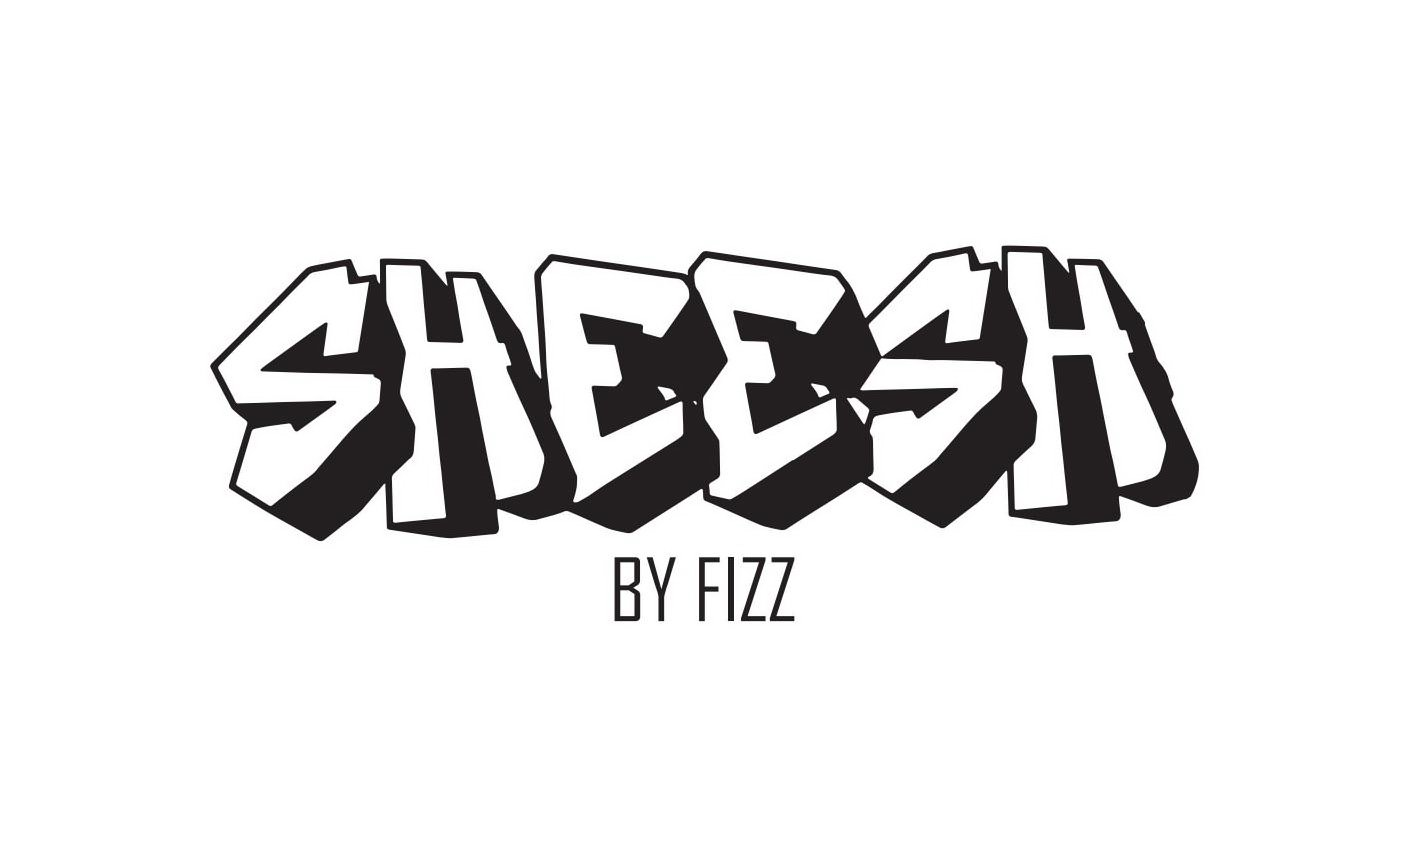  SHEESH BY FIZZ